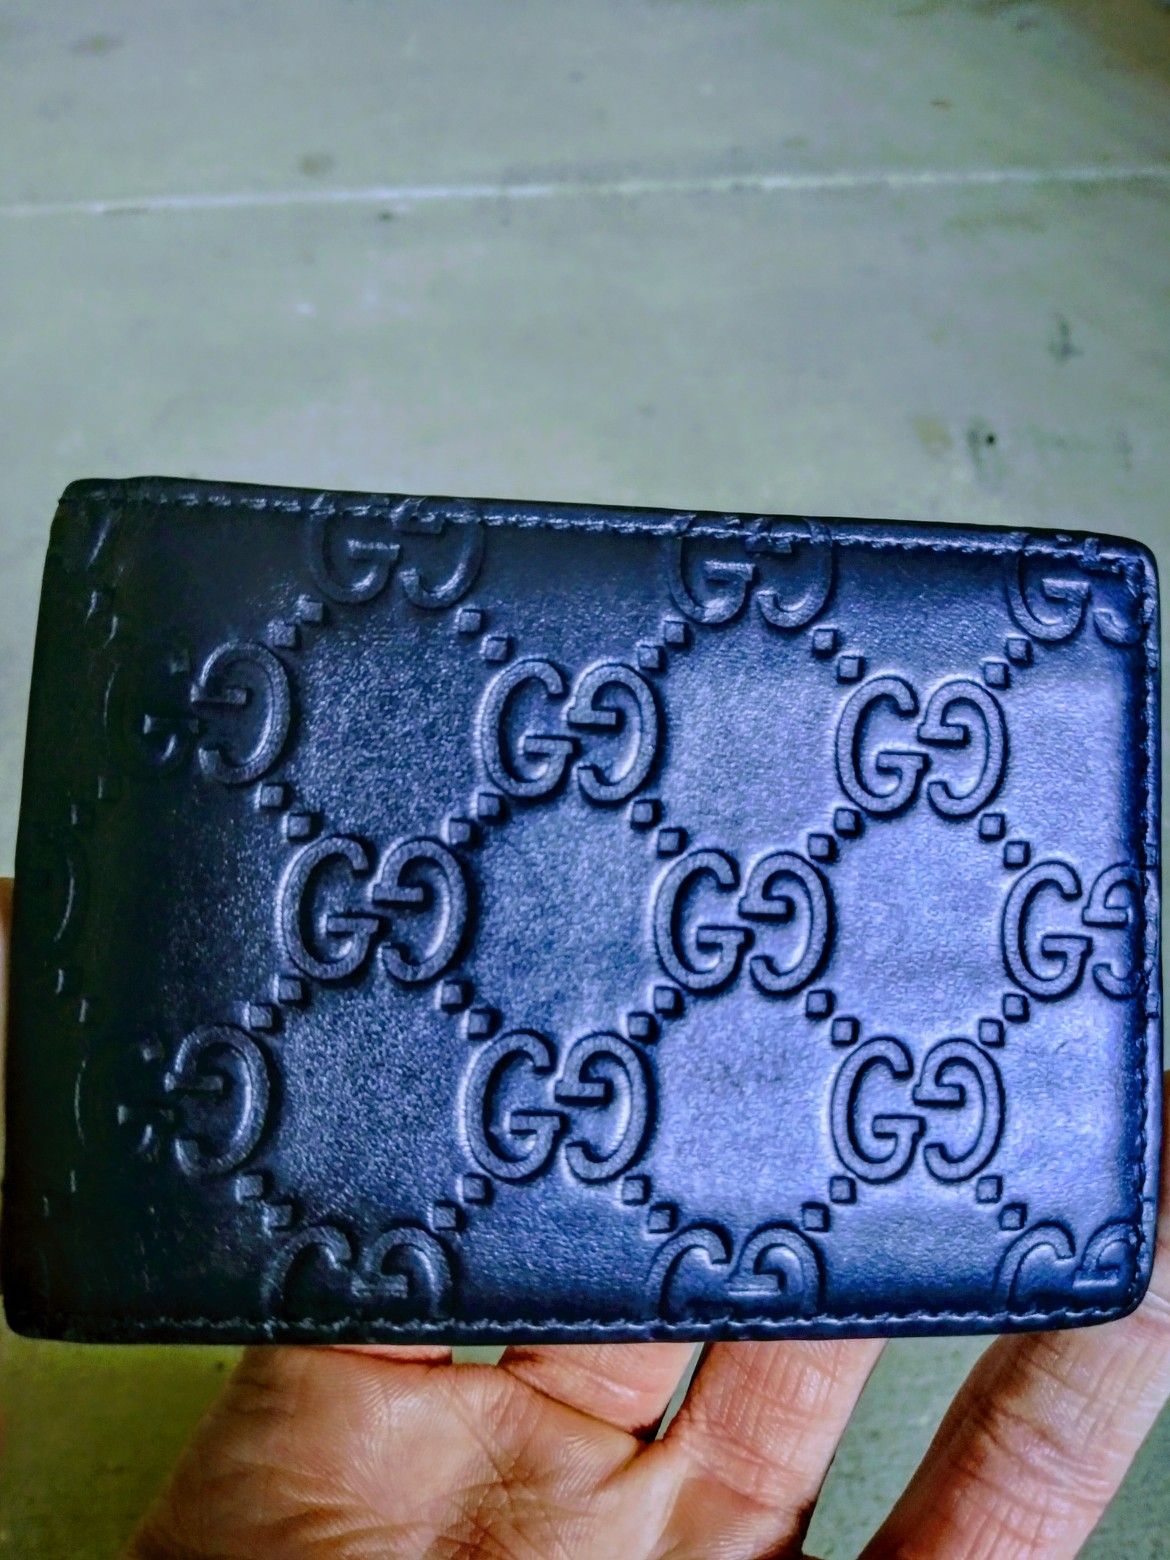 Gucci Men's Wallet - Blue. ($180 - O.B.O.)